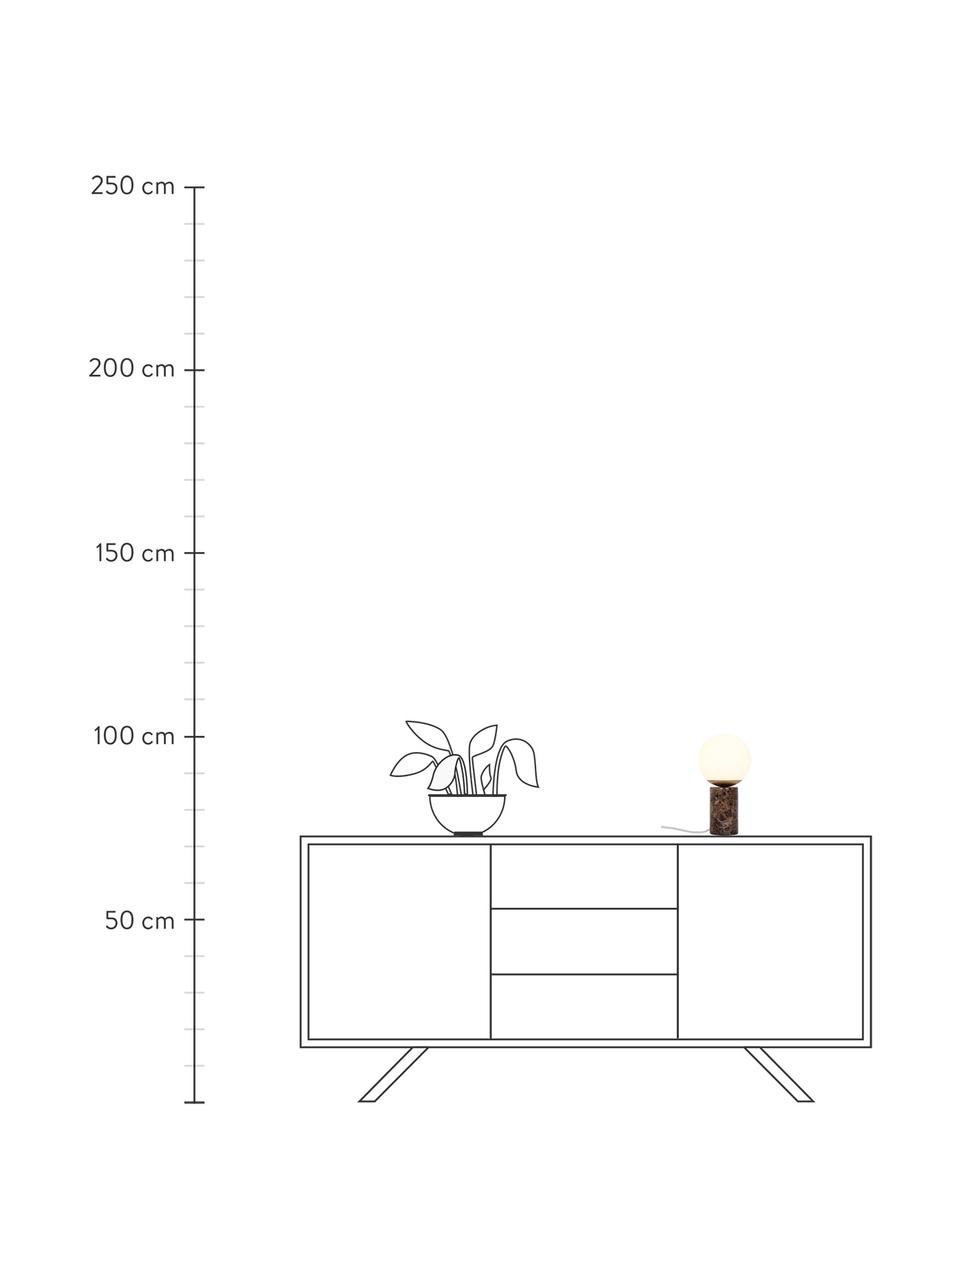 Kleine Tischlampe Lilly mit Marmorfuß, Lampenschirm: Glas, Lampenfuß: Marmor, Cremeweiß, Braun, marmoriert, Ø 15 x H 29 cm